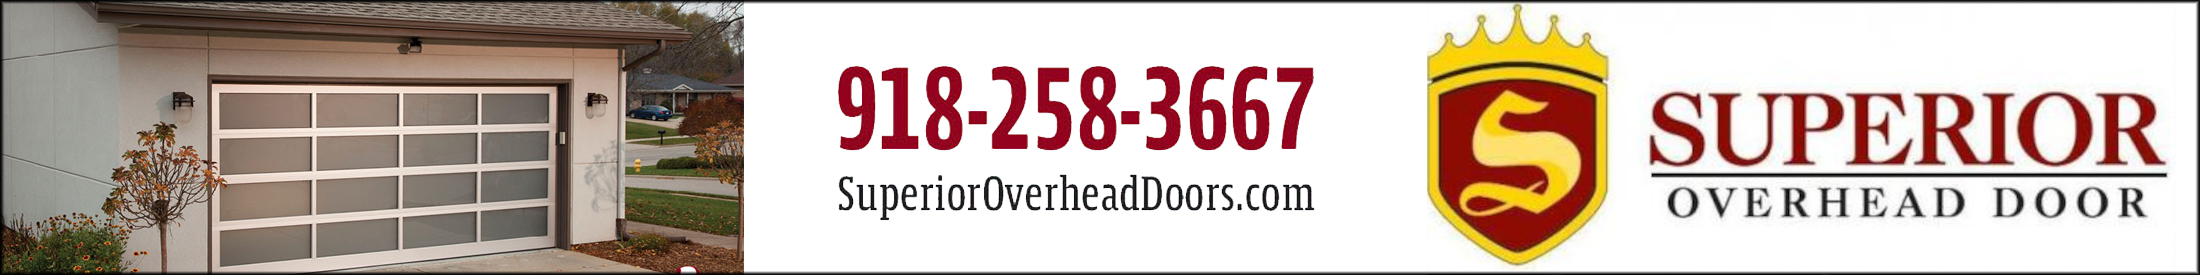 Image of Superior Overhead Door Advertisement